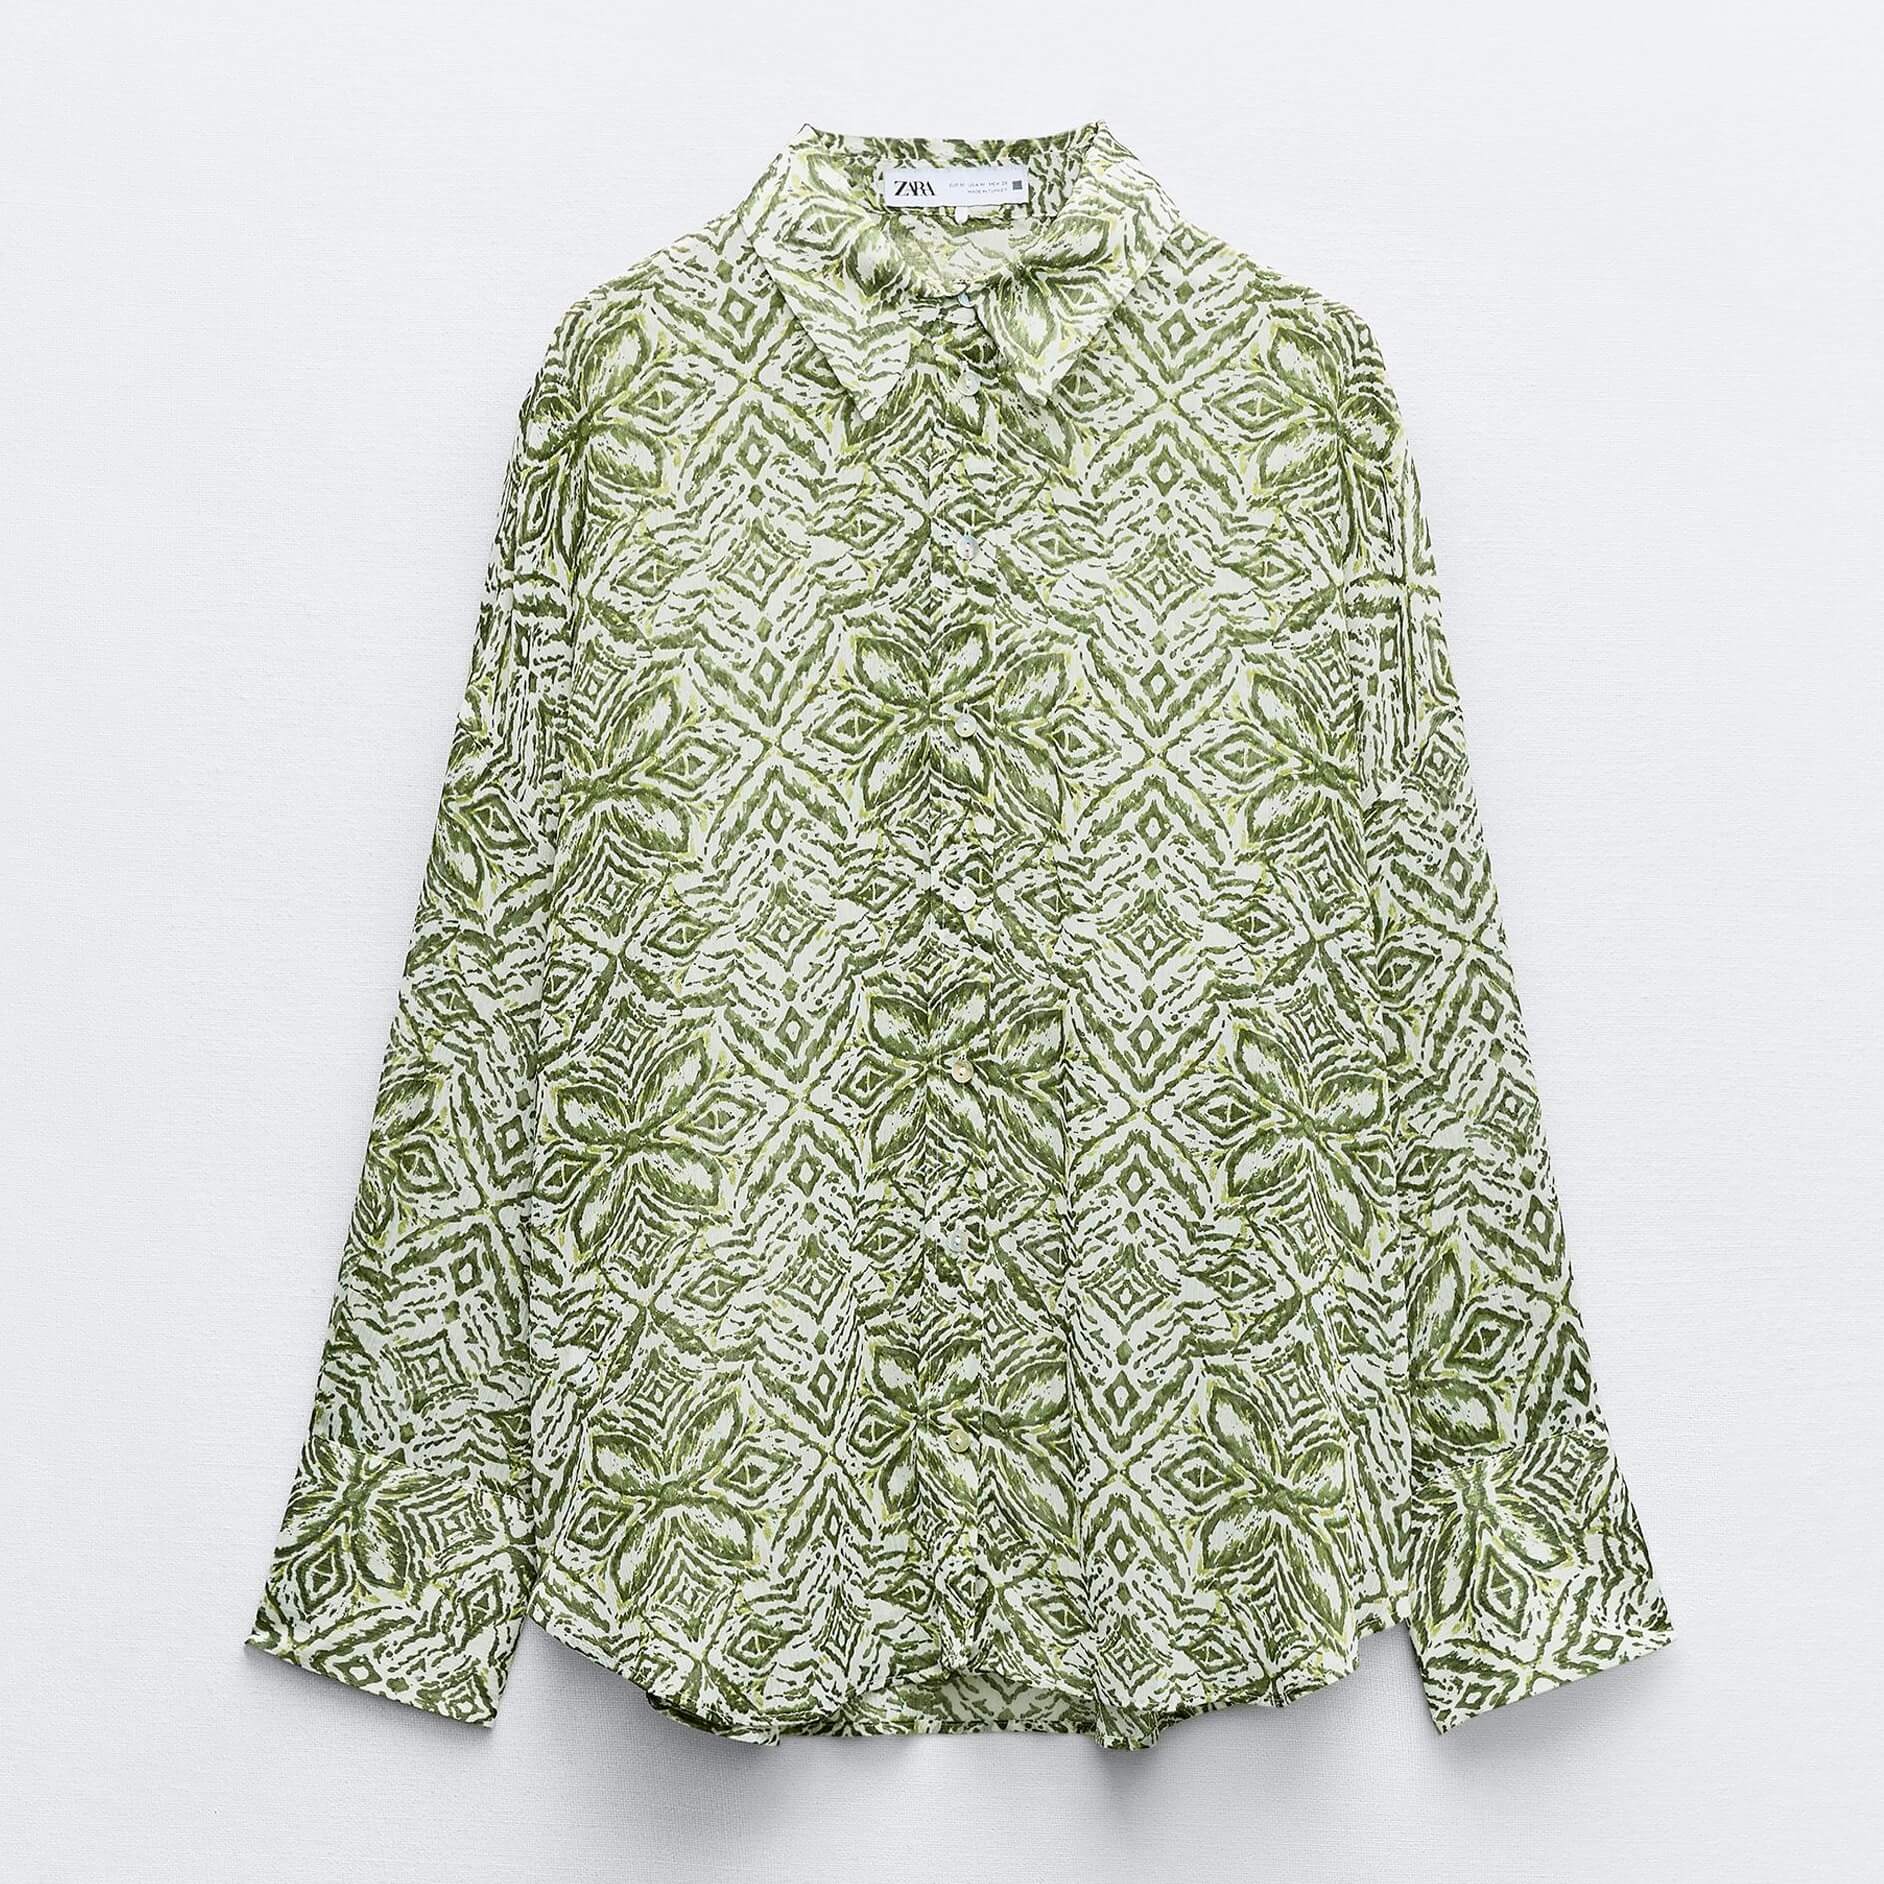 Рубашка Zara Printed, зеленый/белый рубашка zara flowing printed разноцветный